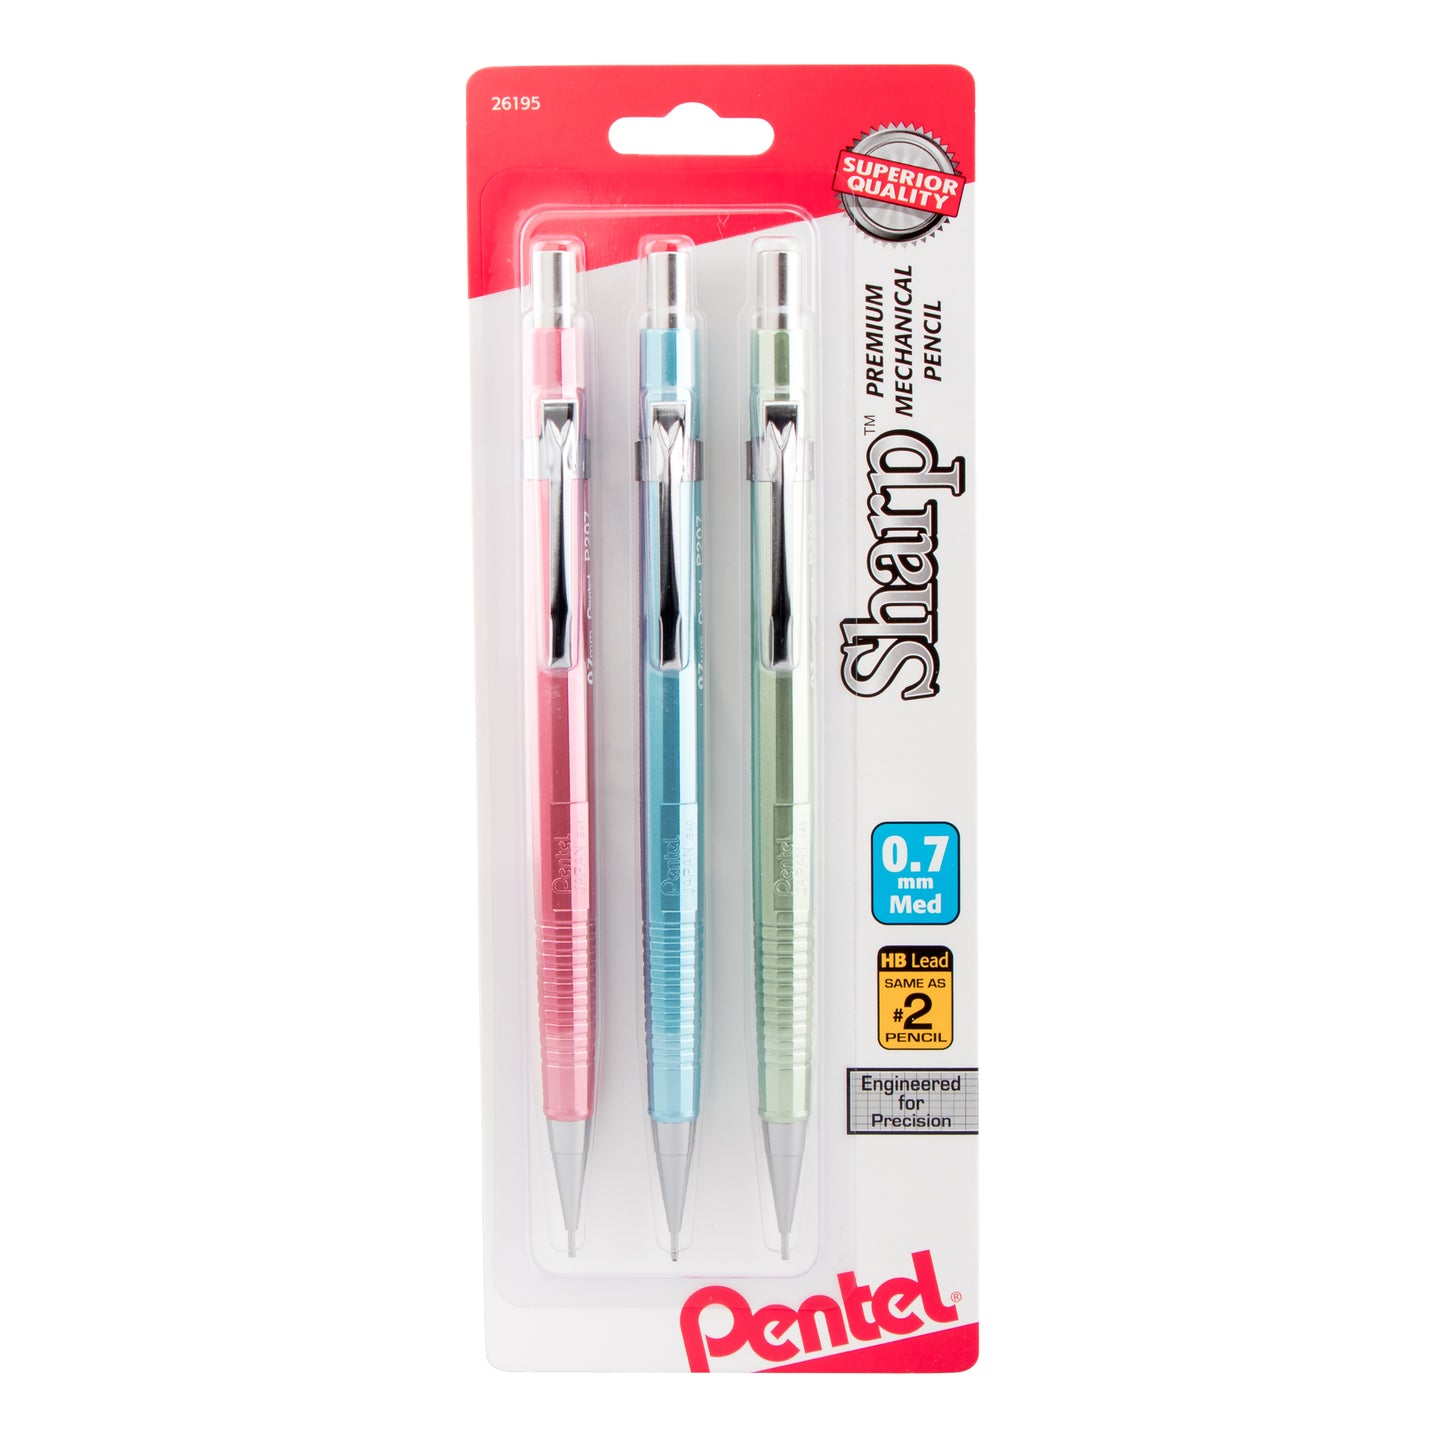 Sharp Mechanical Pencil (0.7mm) Metallic Barrels, Assorted Colors (MP1/MS/MK1), 3-Pk